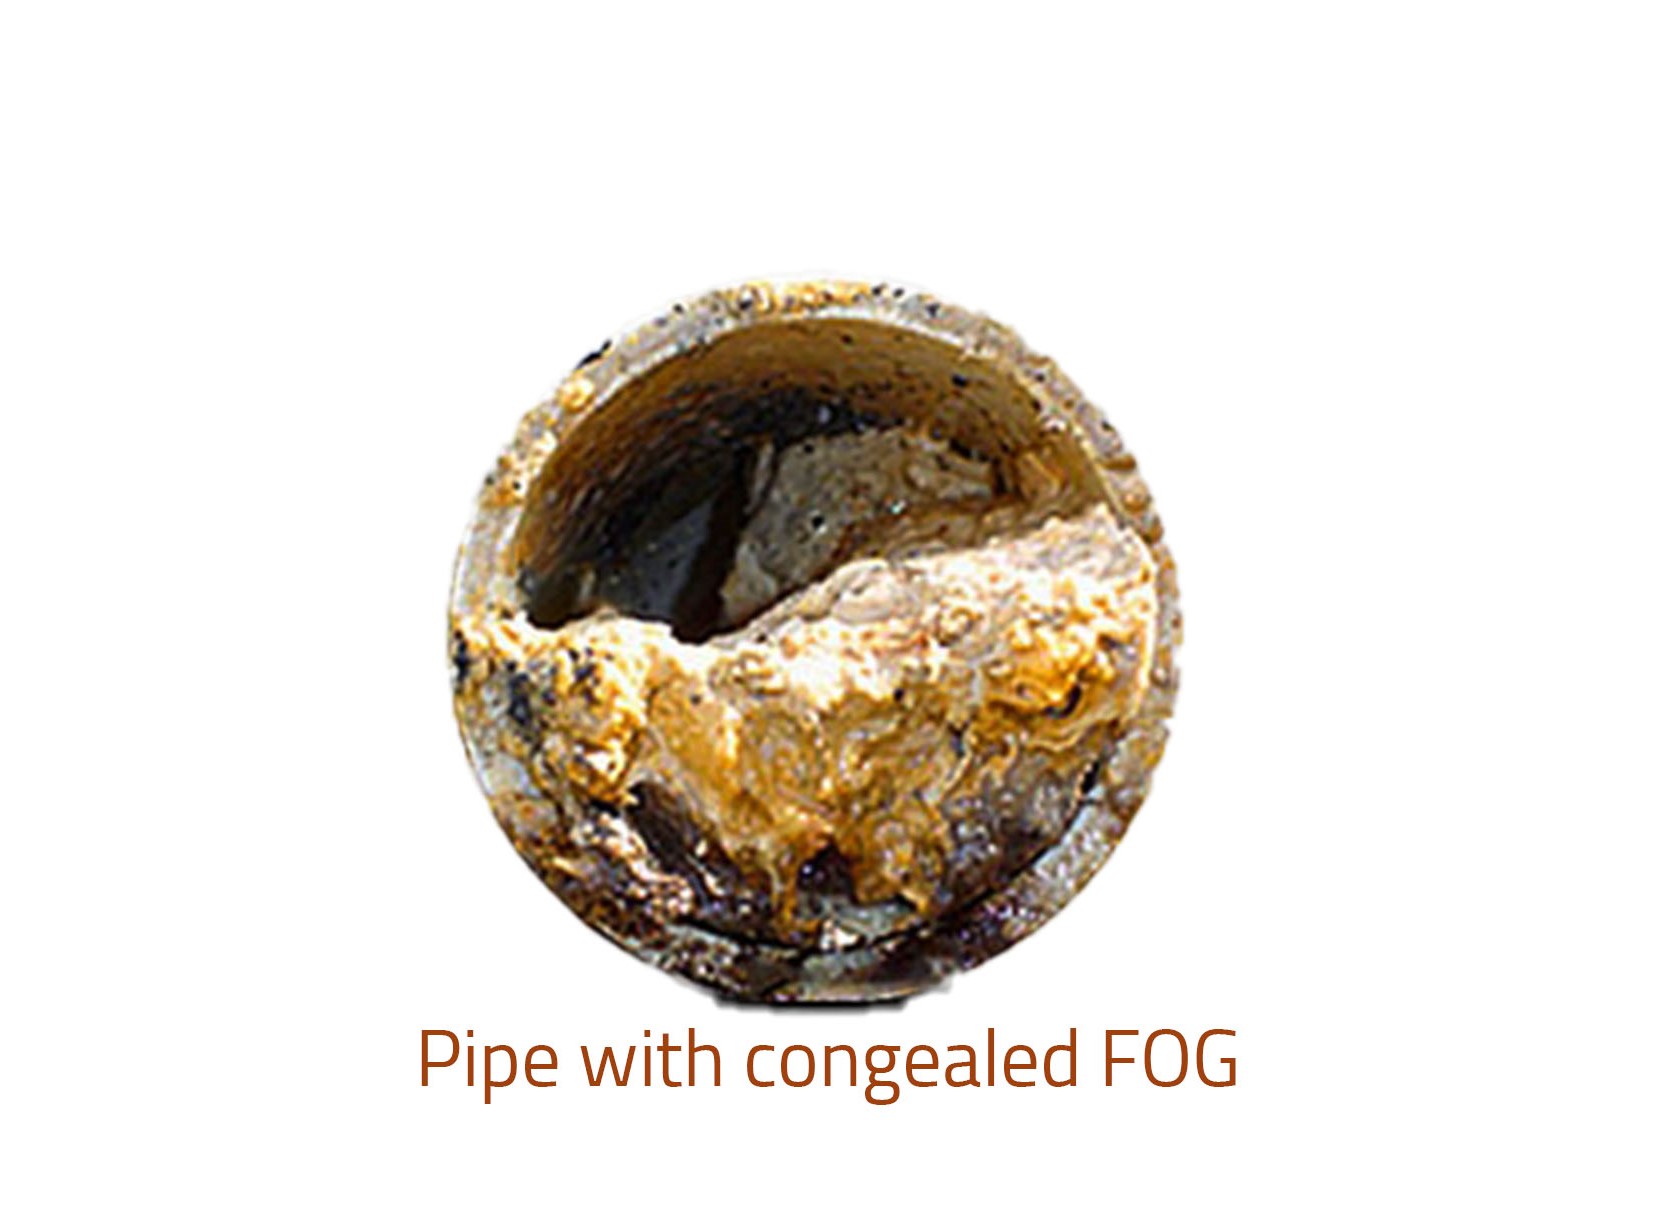 FOG in pipe